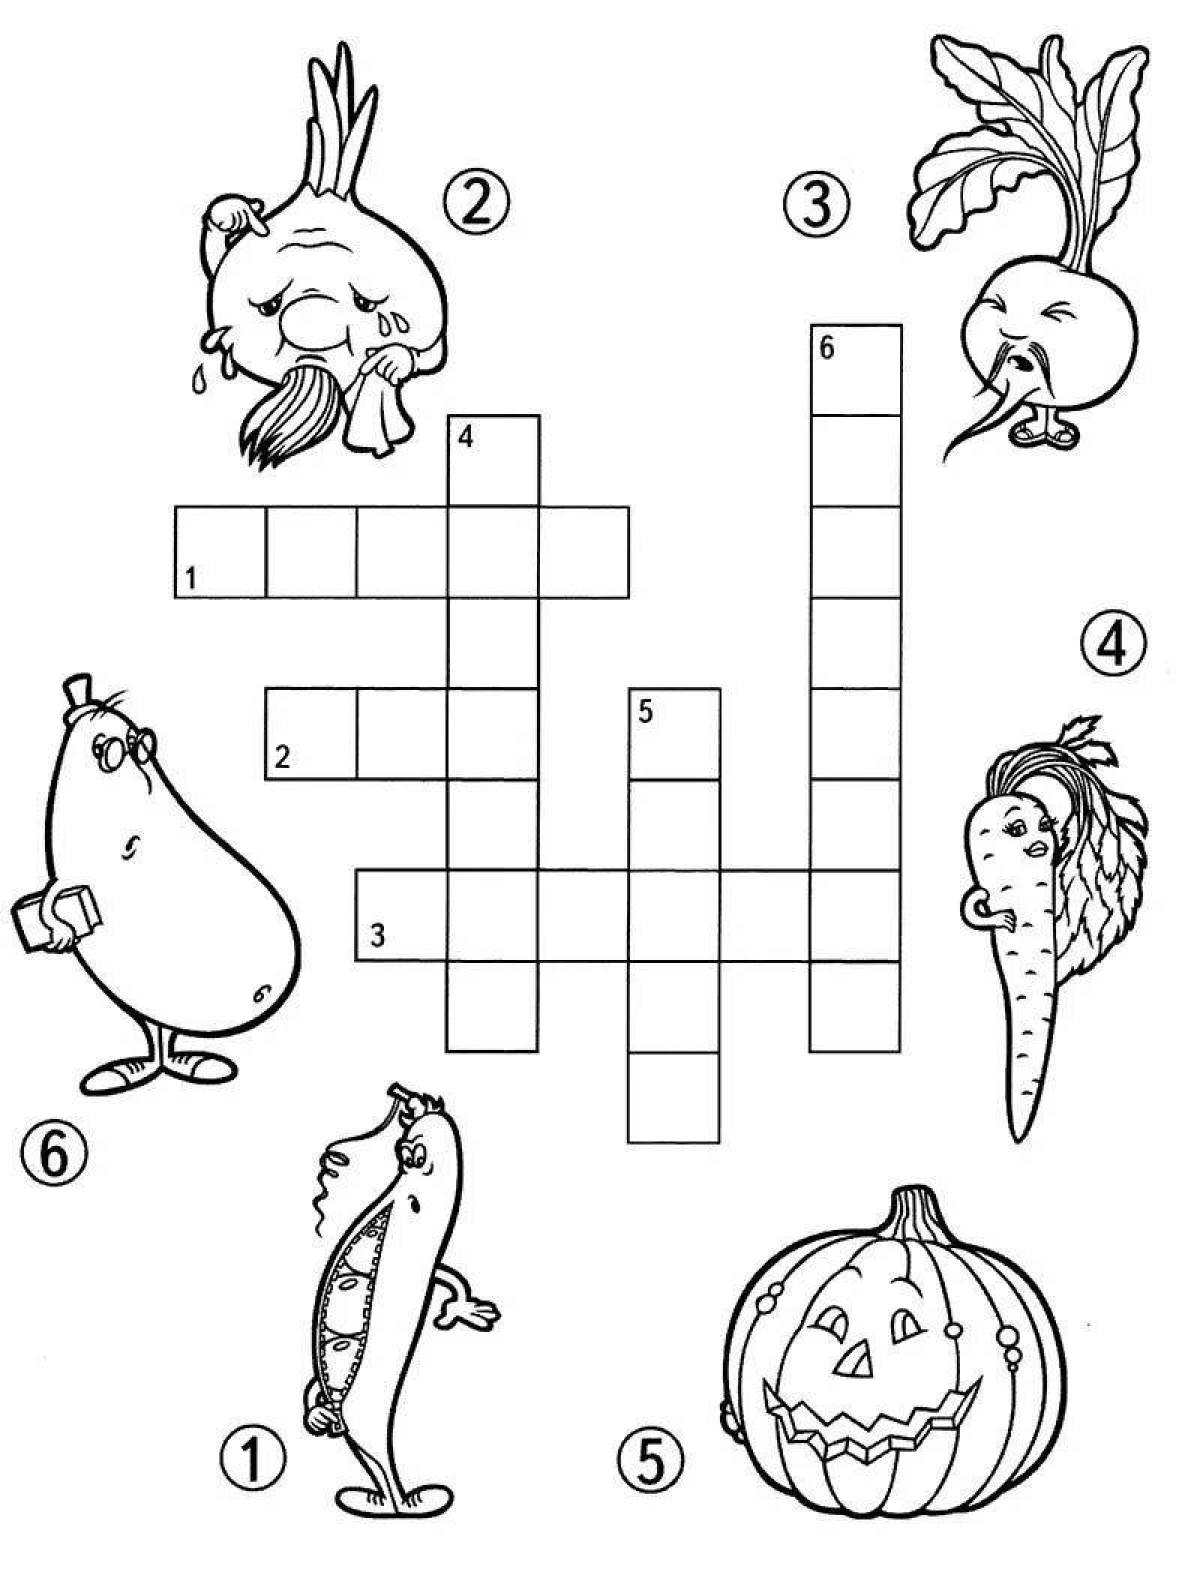 Crossword #9